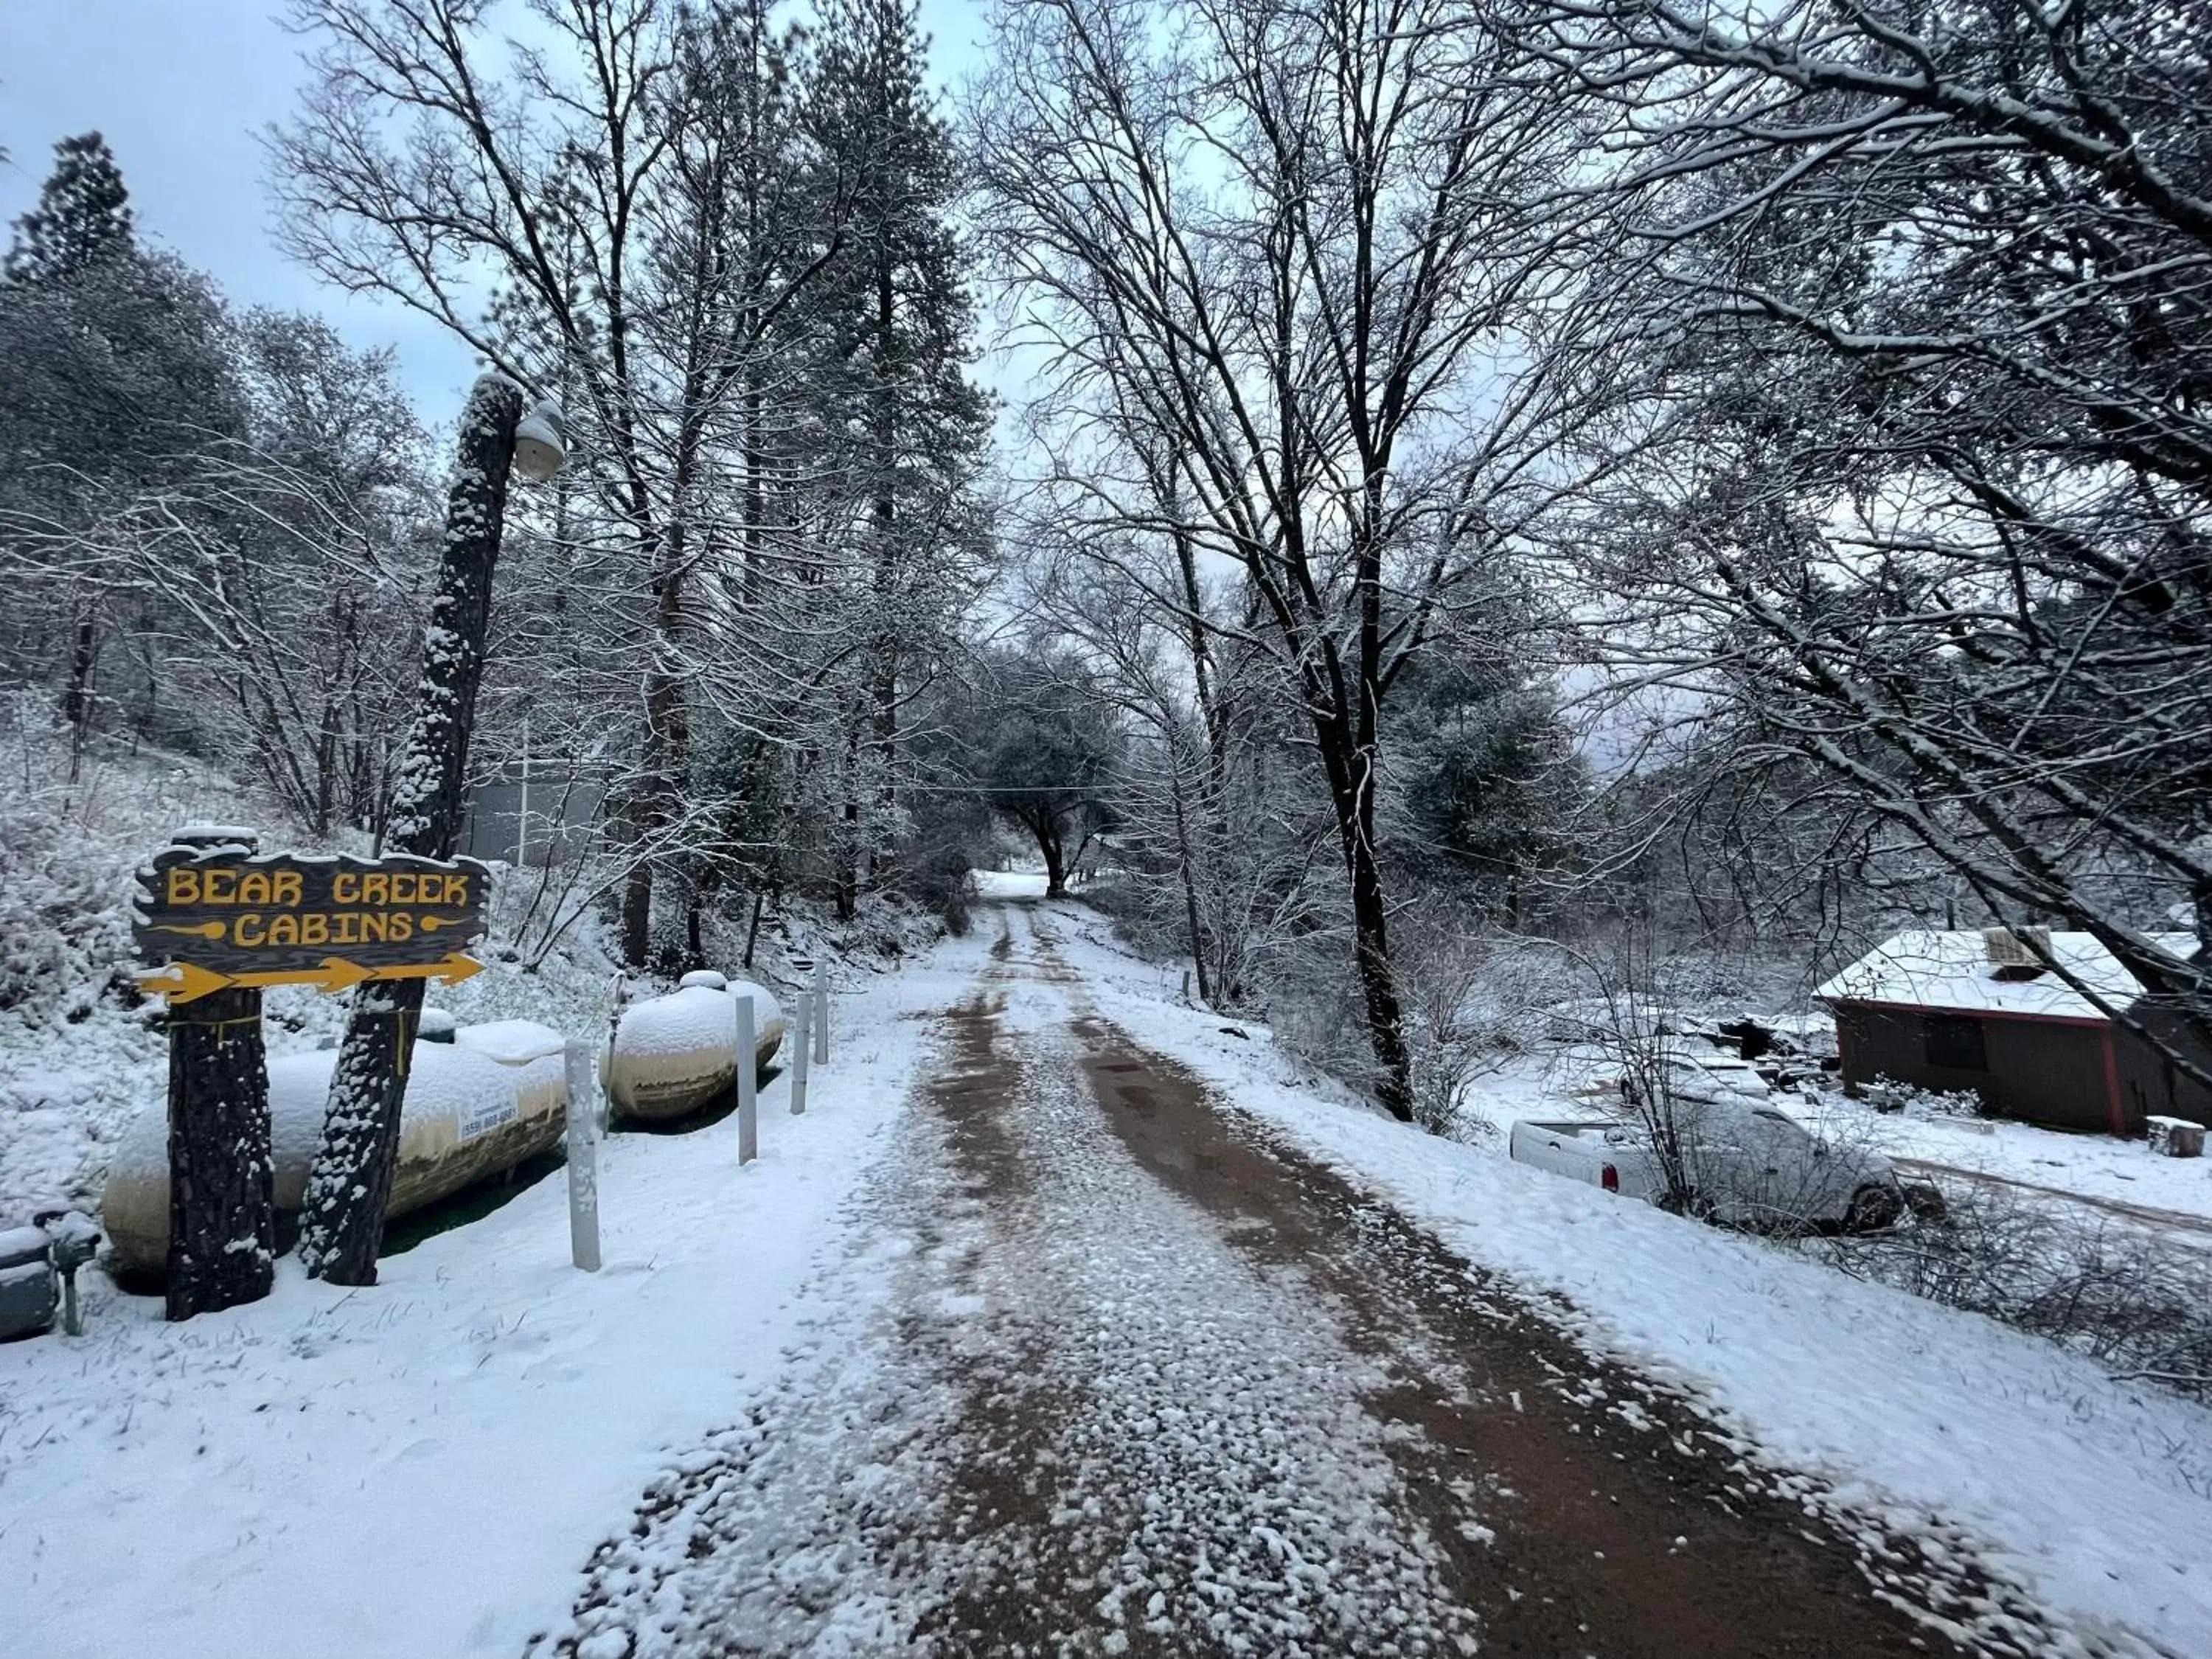 Winter in Bear Creek Cabins